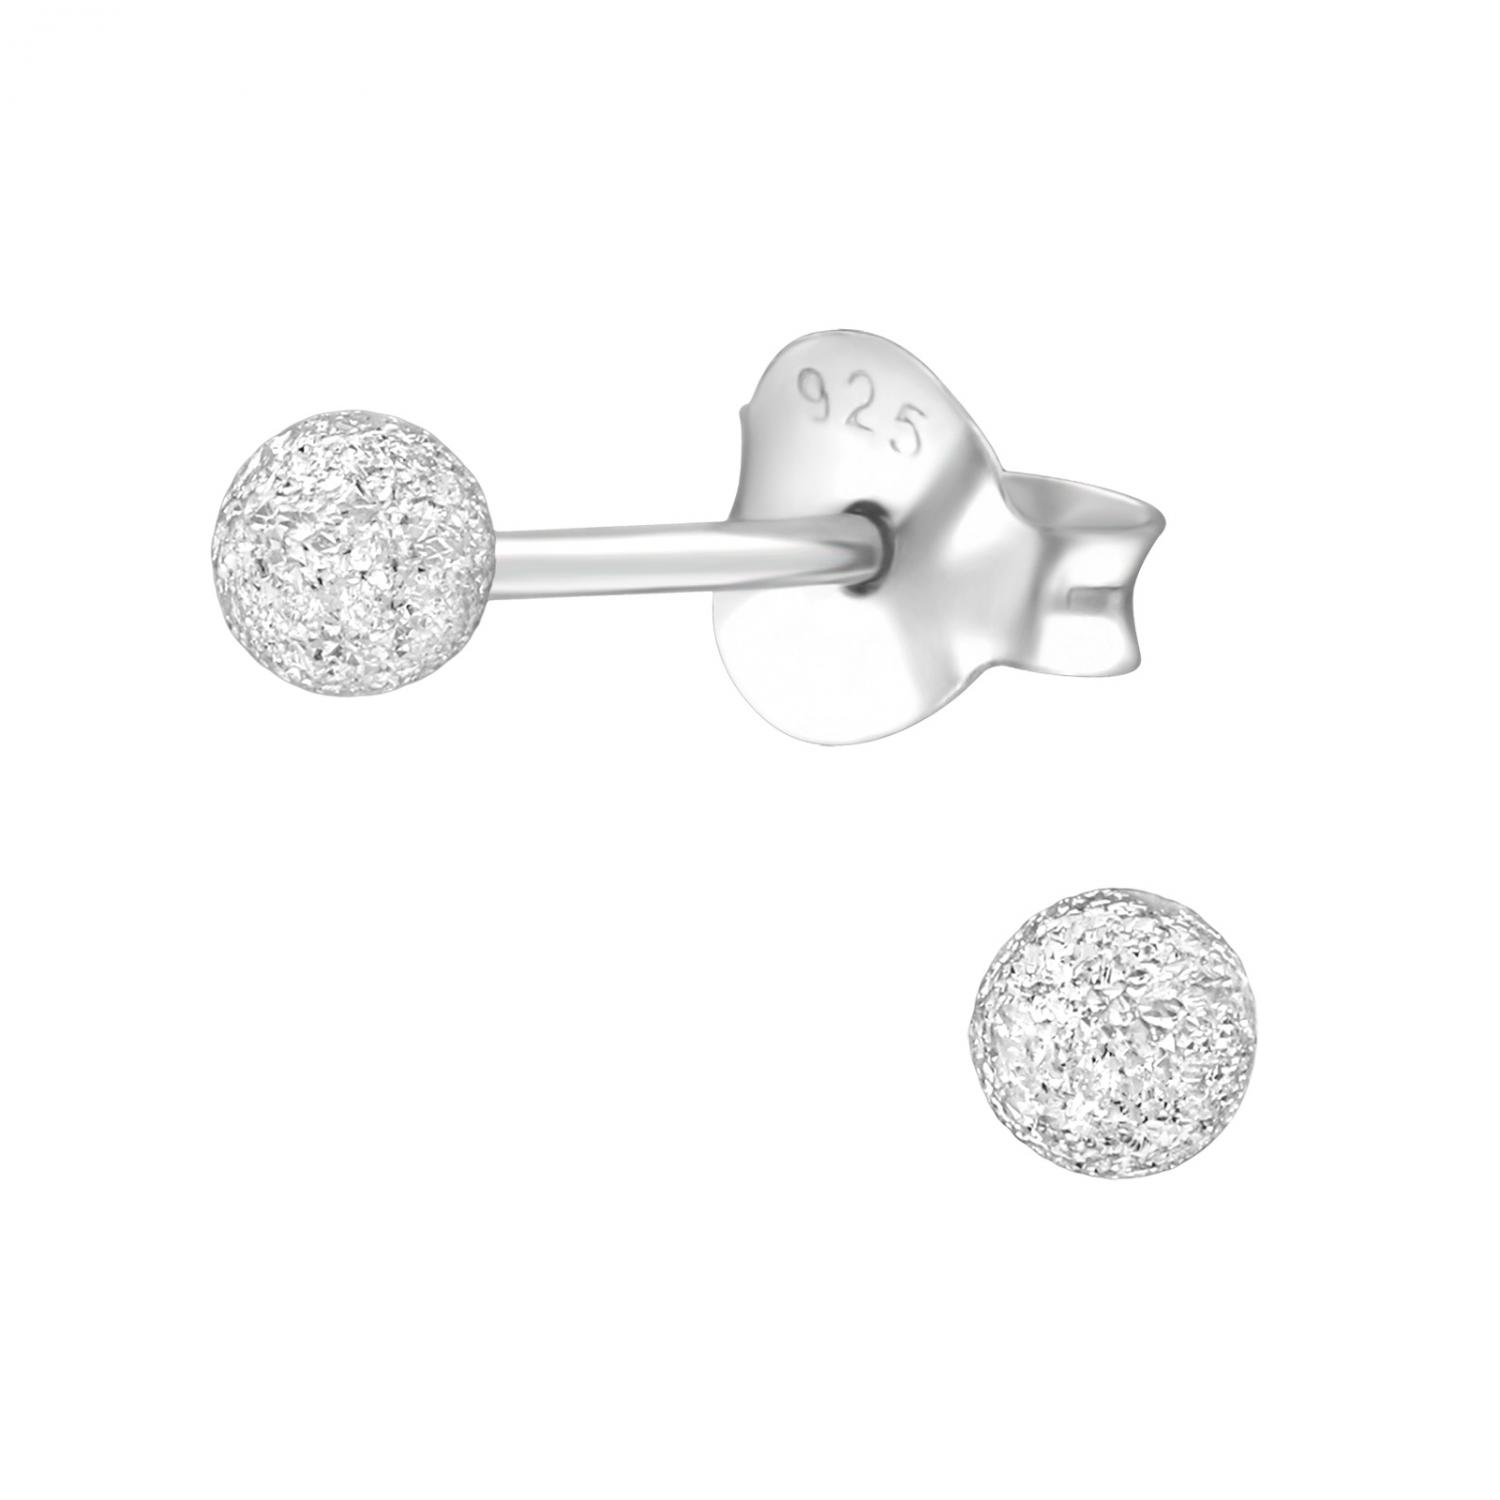 Kula 3 mm - Studs - Örhängen i äkta silver